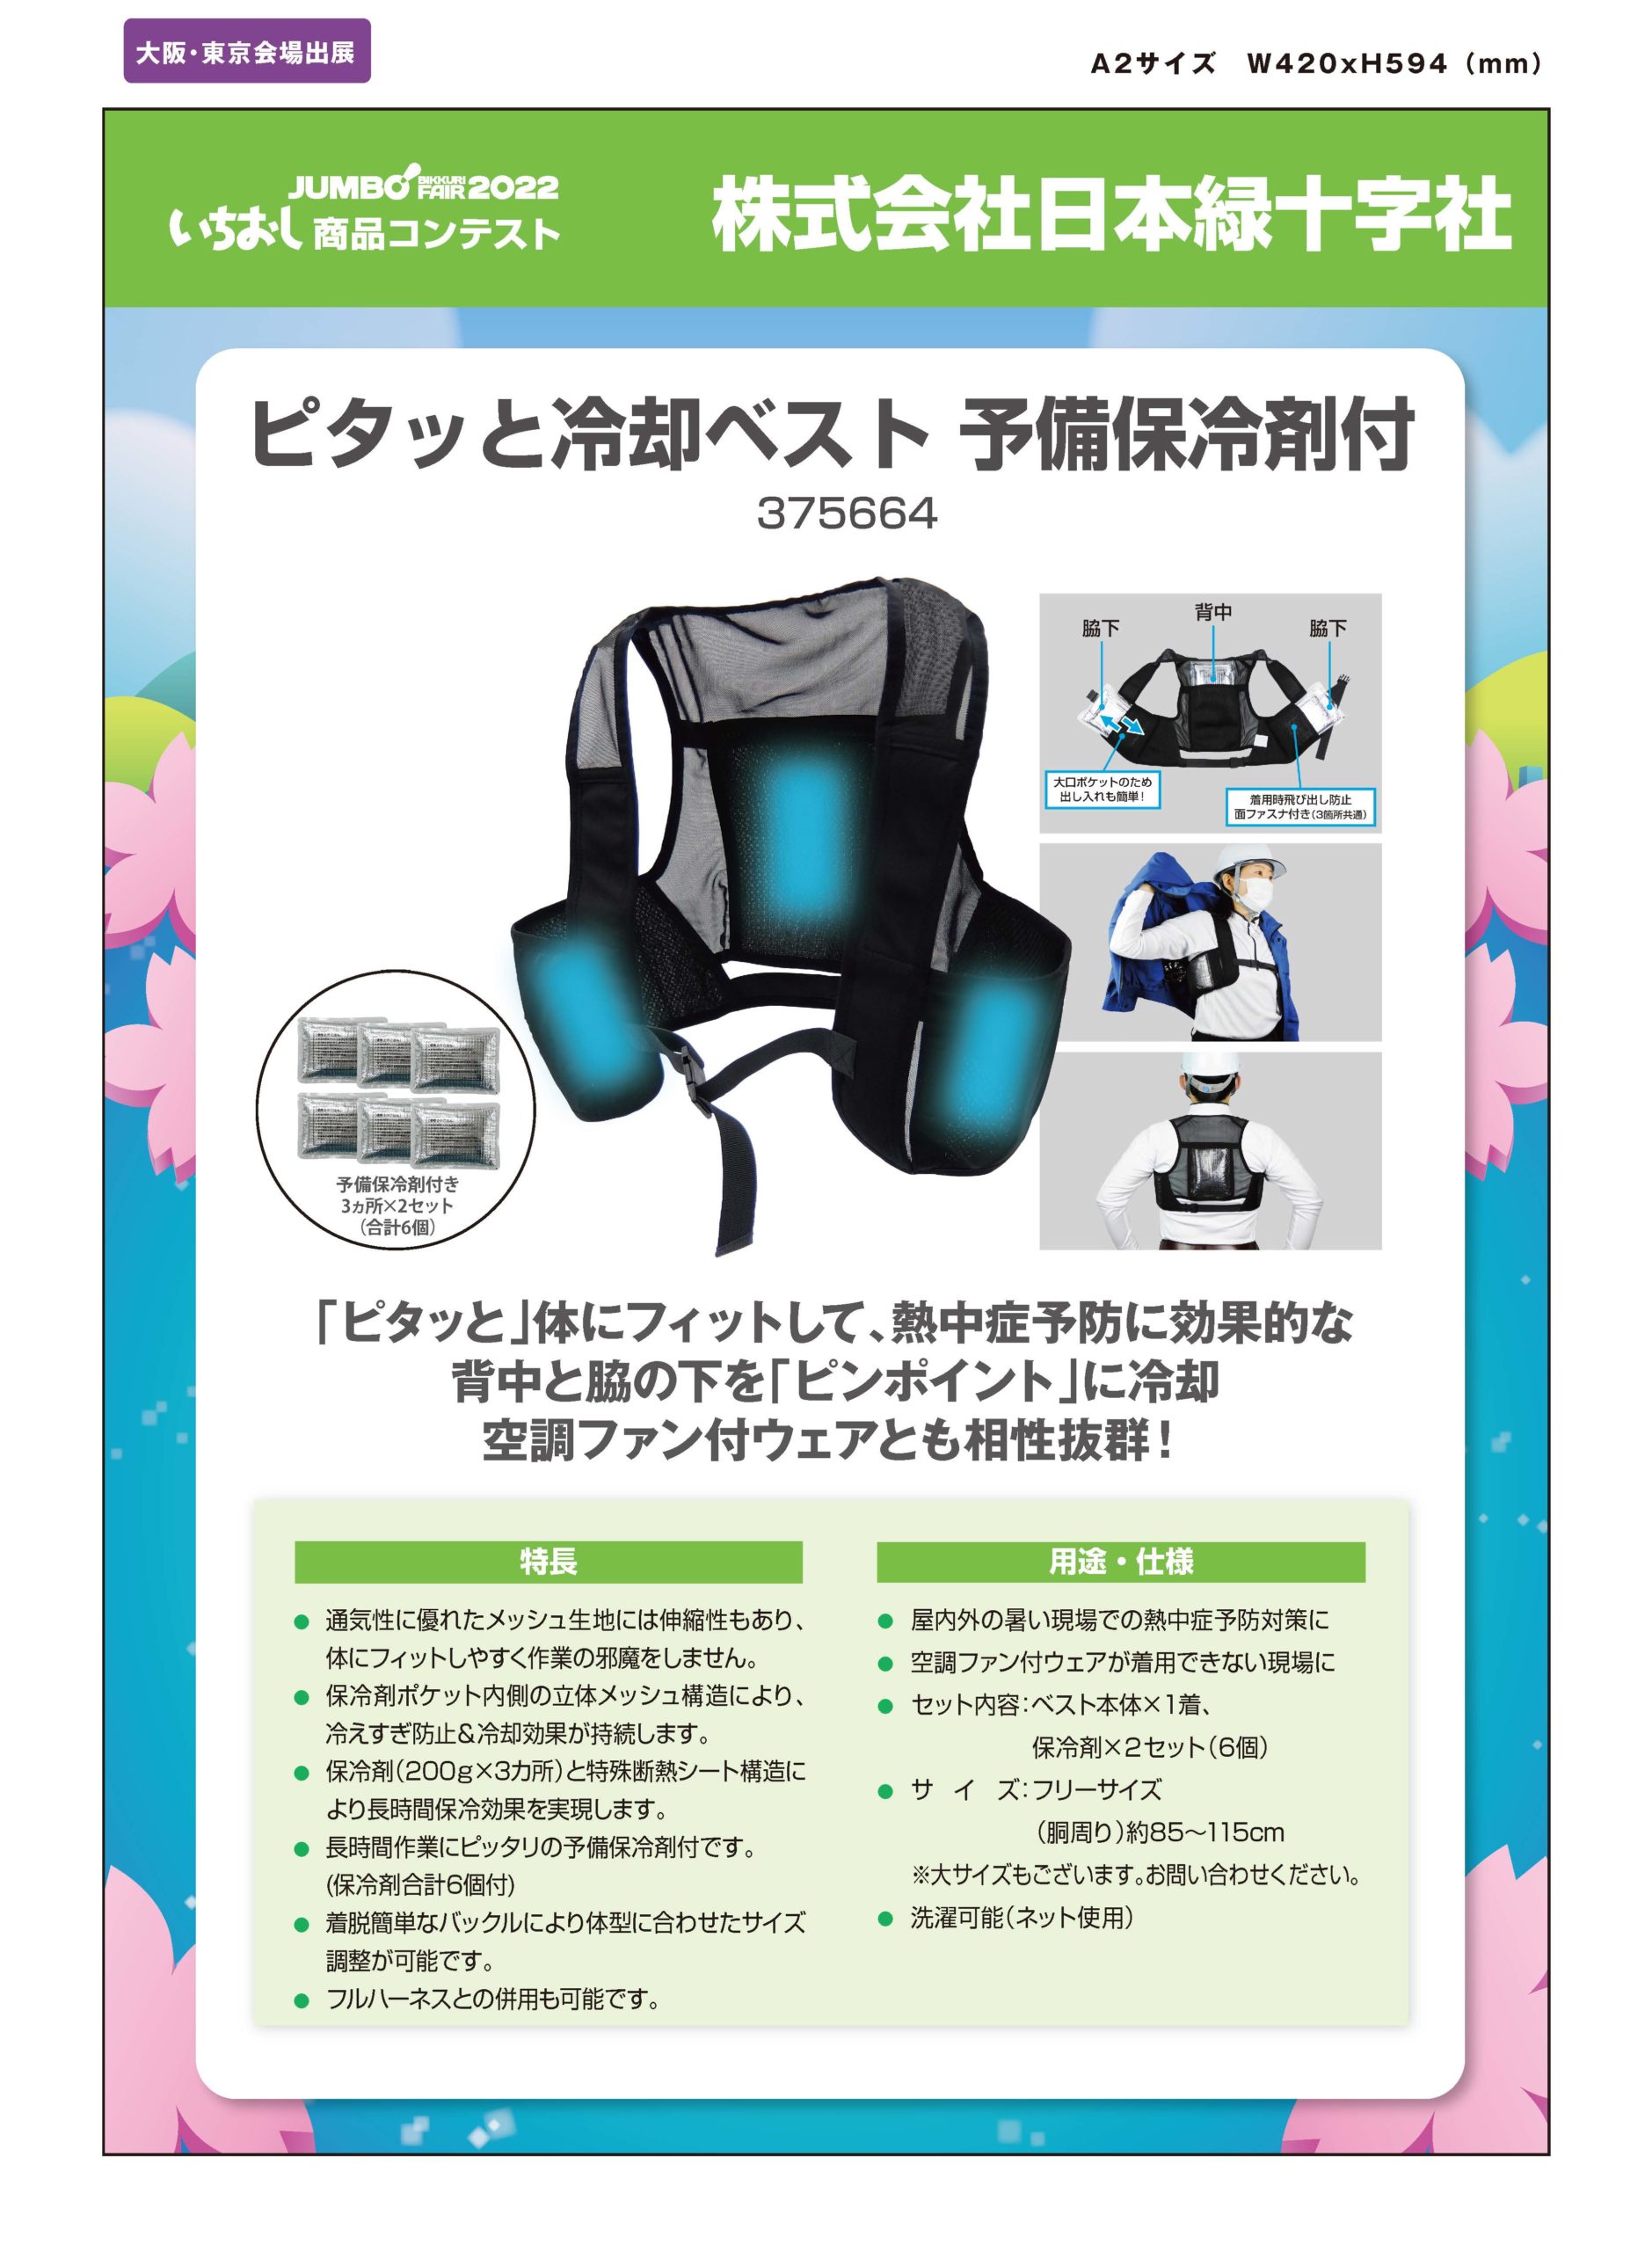 「ピタッと冷却ベスト 予備保冷剤付」株式会社日本緑十字社の画像